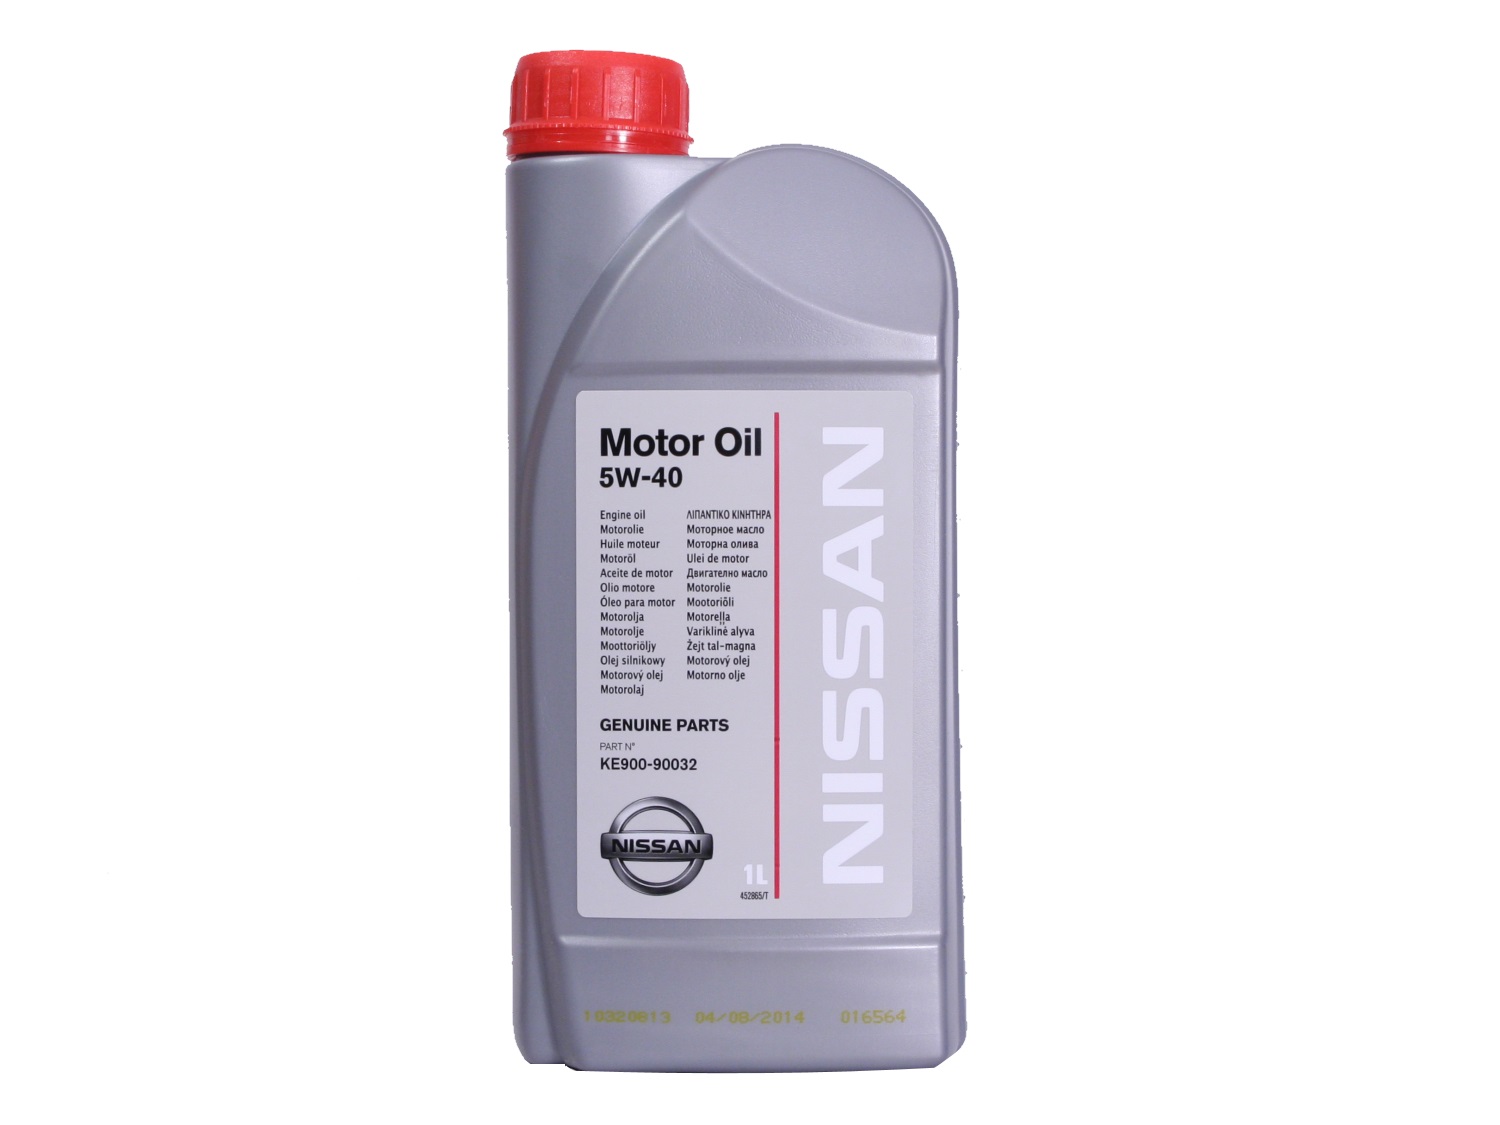 Nissan  Motor Oil 5W-40, 1л